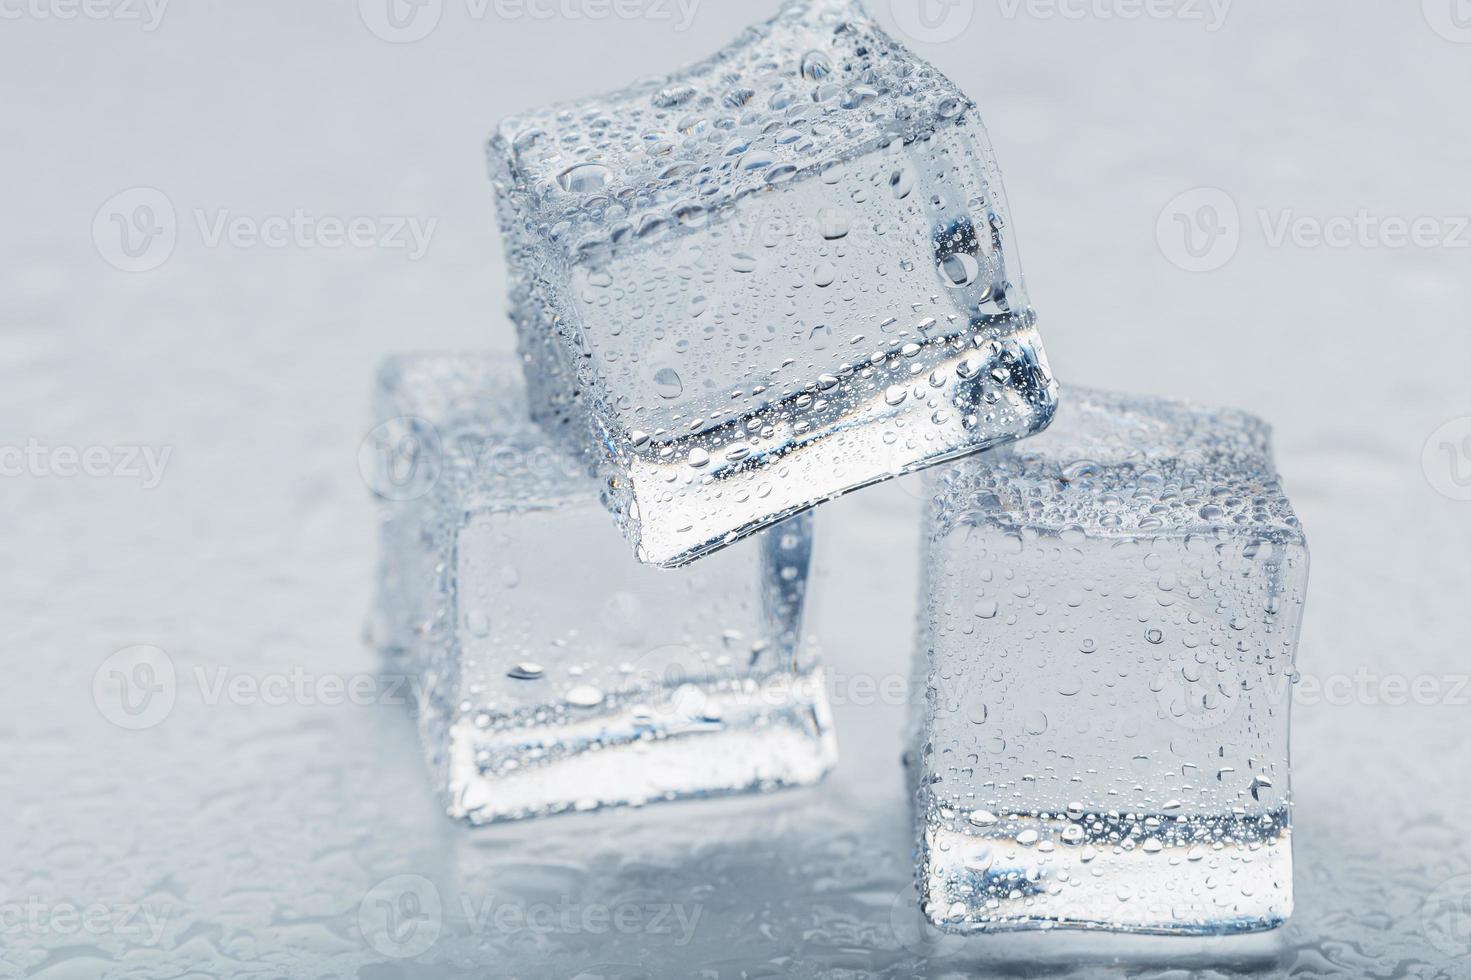 cubos de gelo na forma de uma pirâmide com água cai de perto - em macro sobre um fundo branco. foto